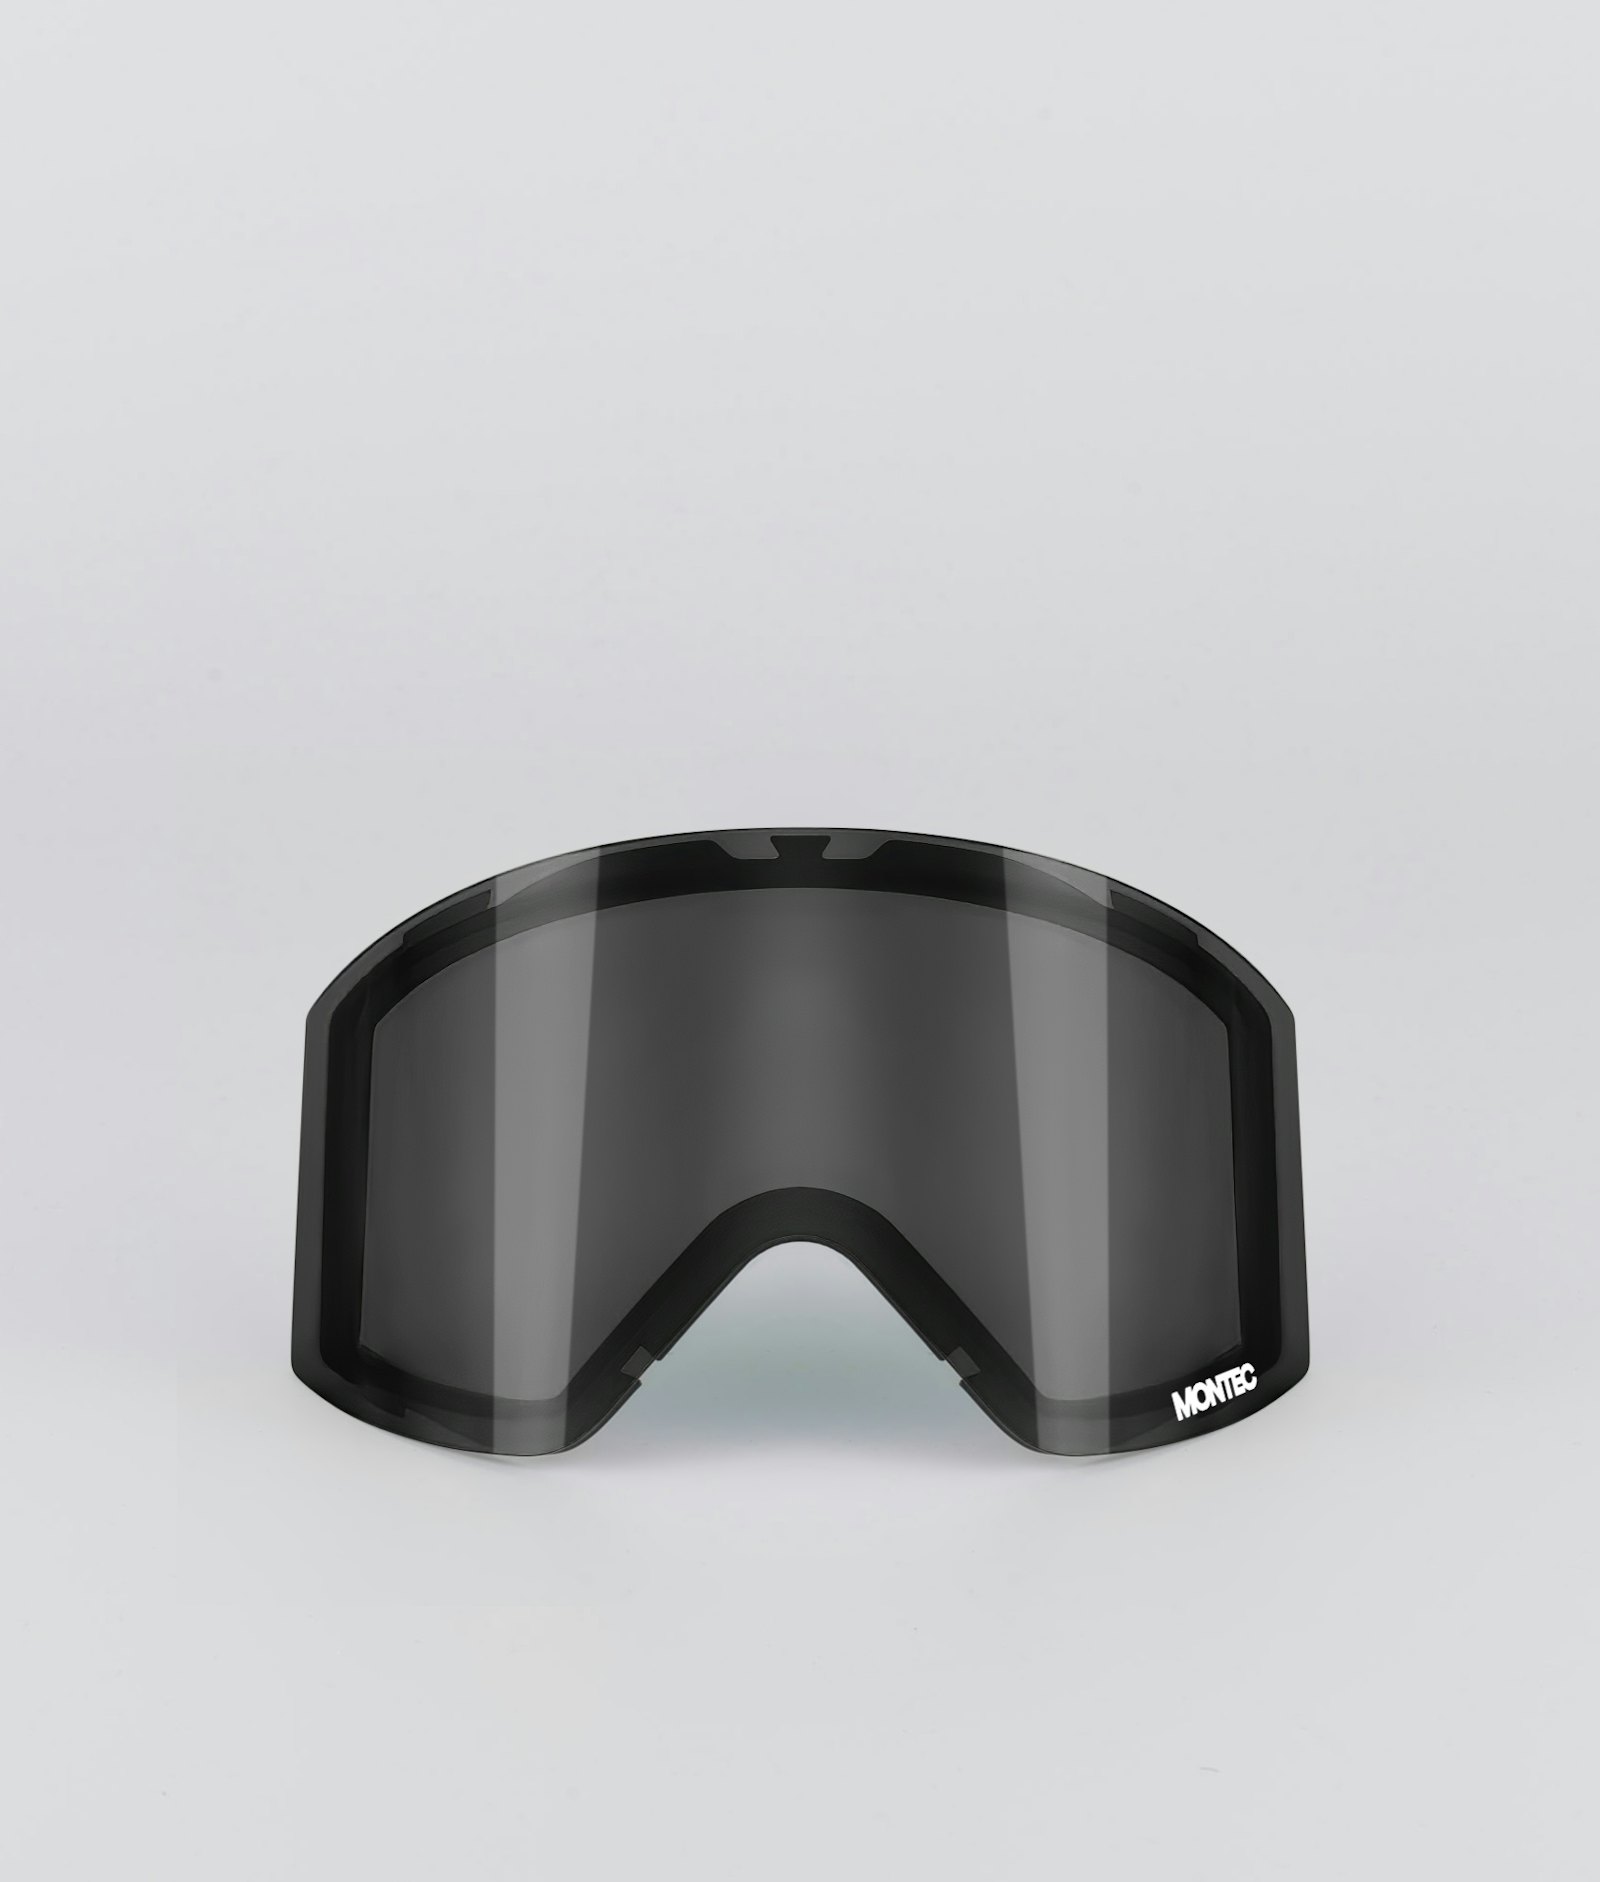 Montec Scope 2020 Goggle Lens Medium Extra Glas Snow Black